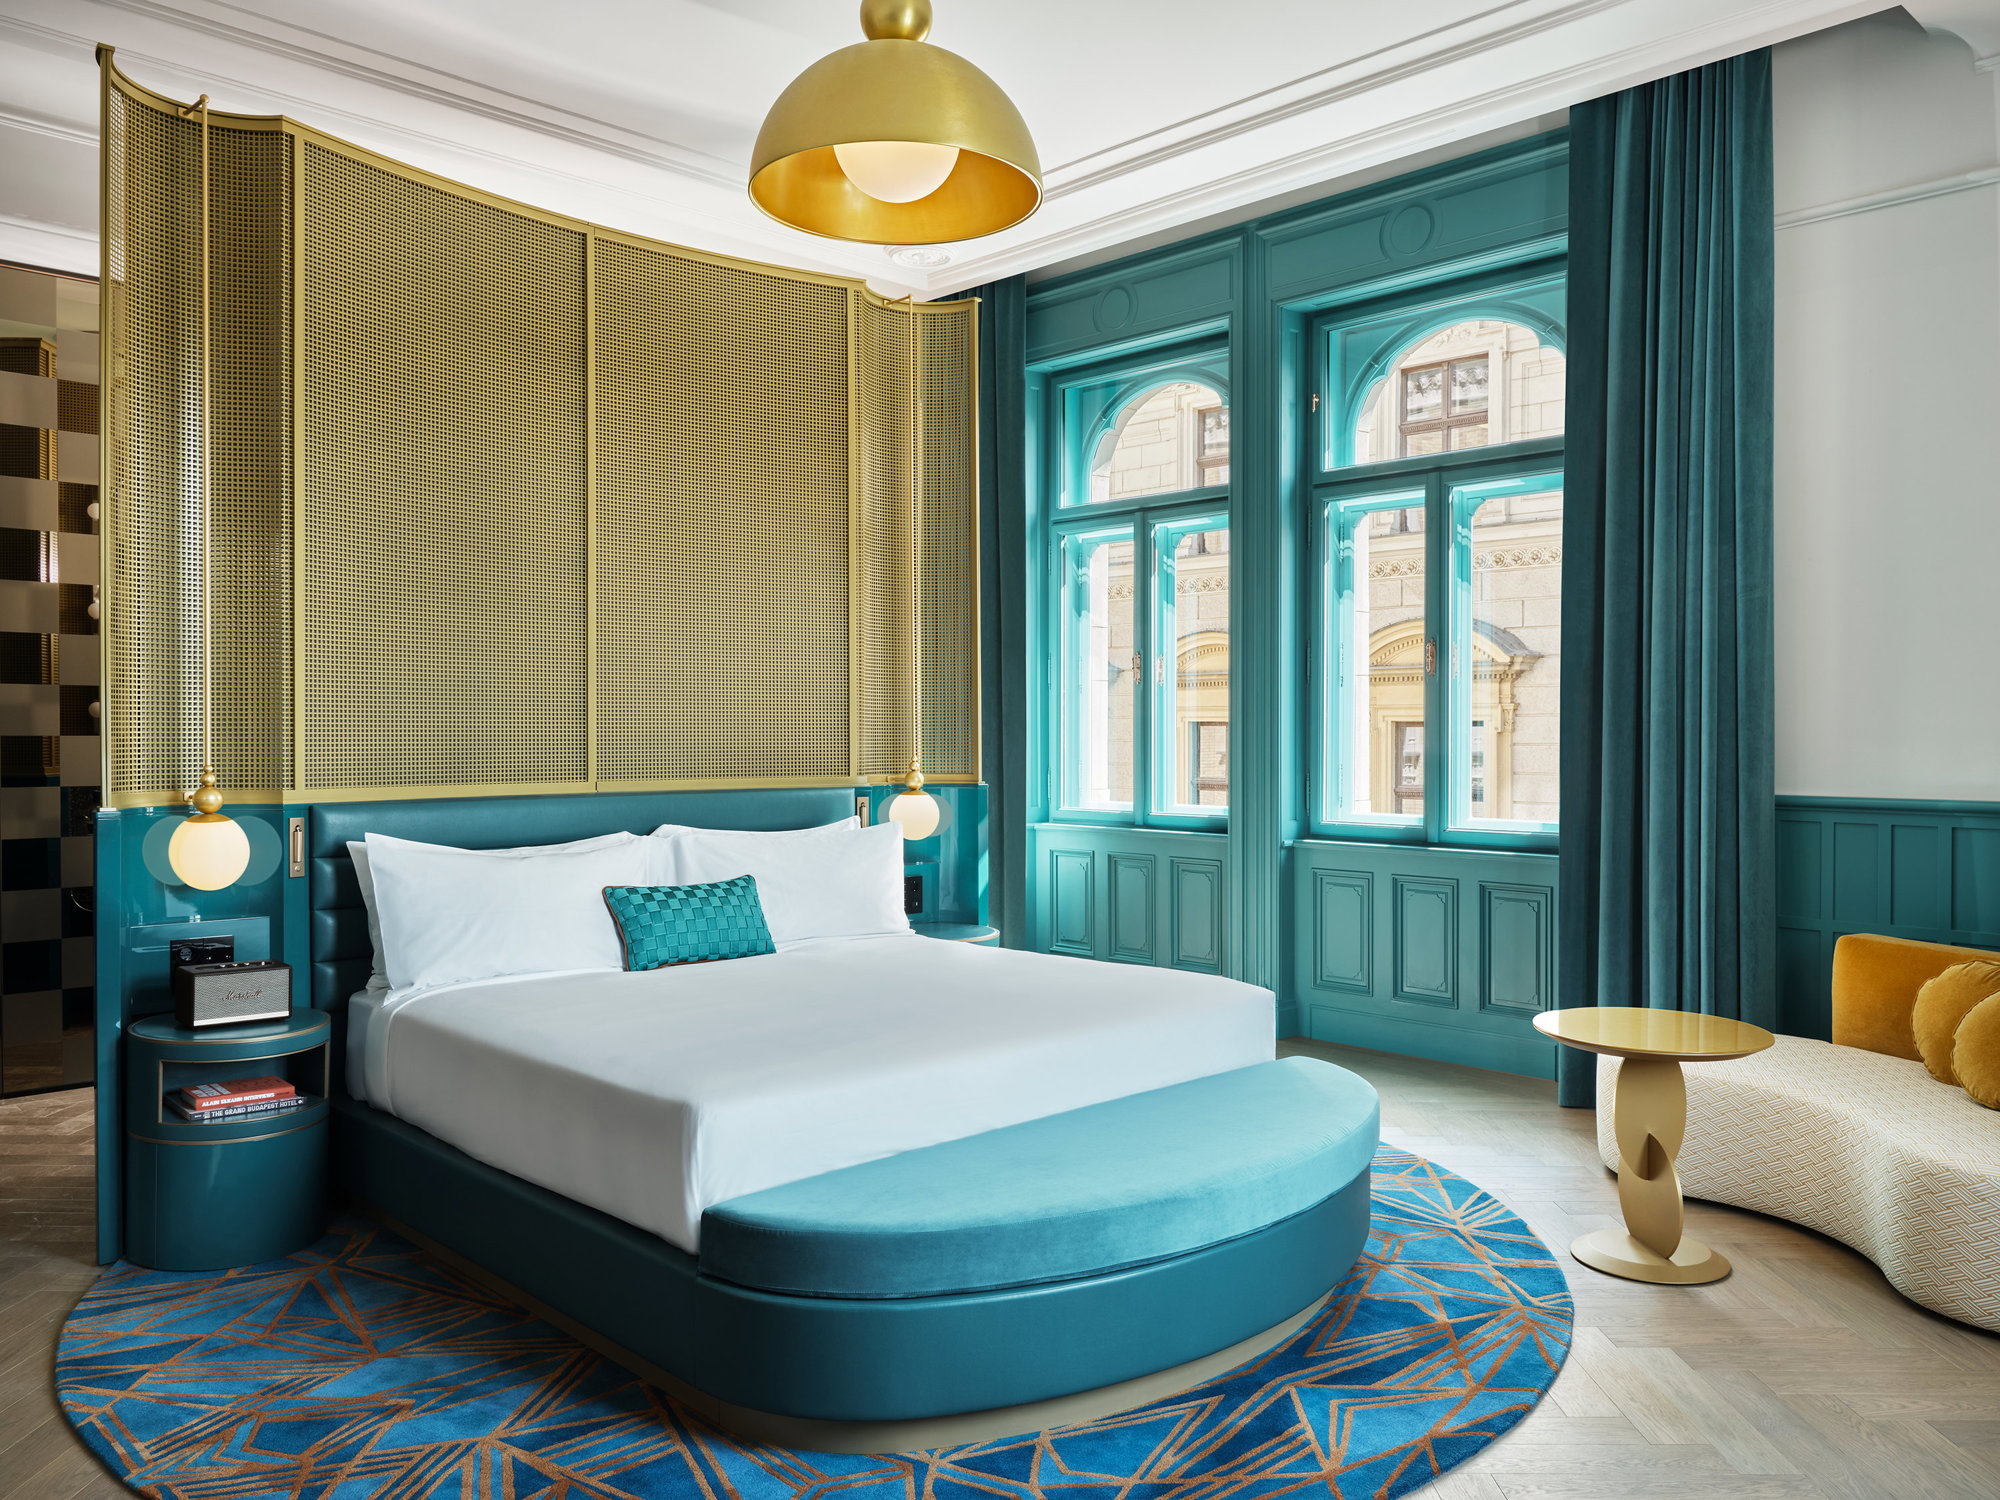 Habitación del hotel W Budapest en tonos azules y dorados